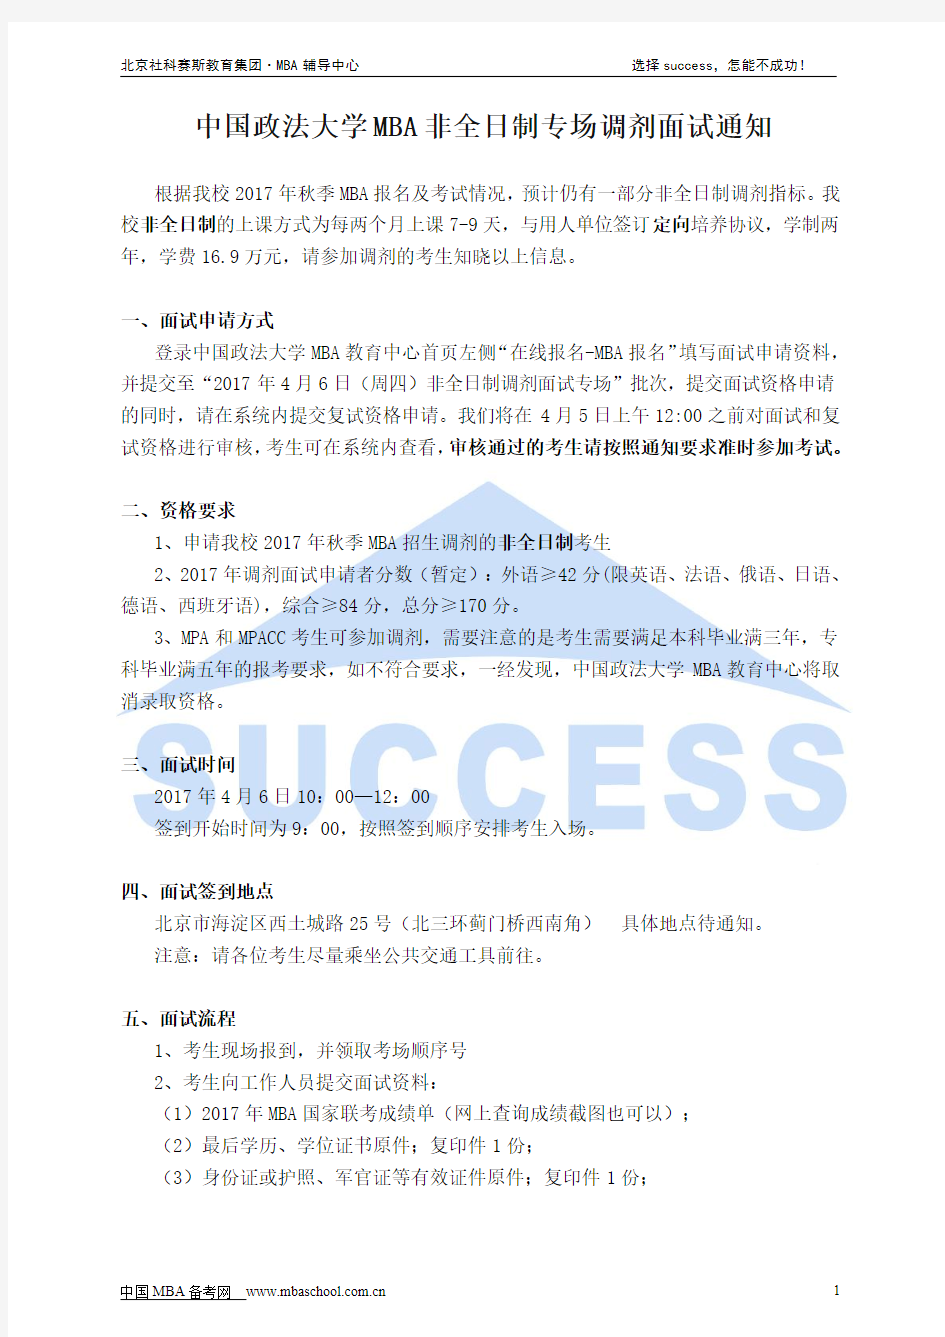 中国政法大学MBA非全日制专场调剂面试通知